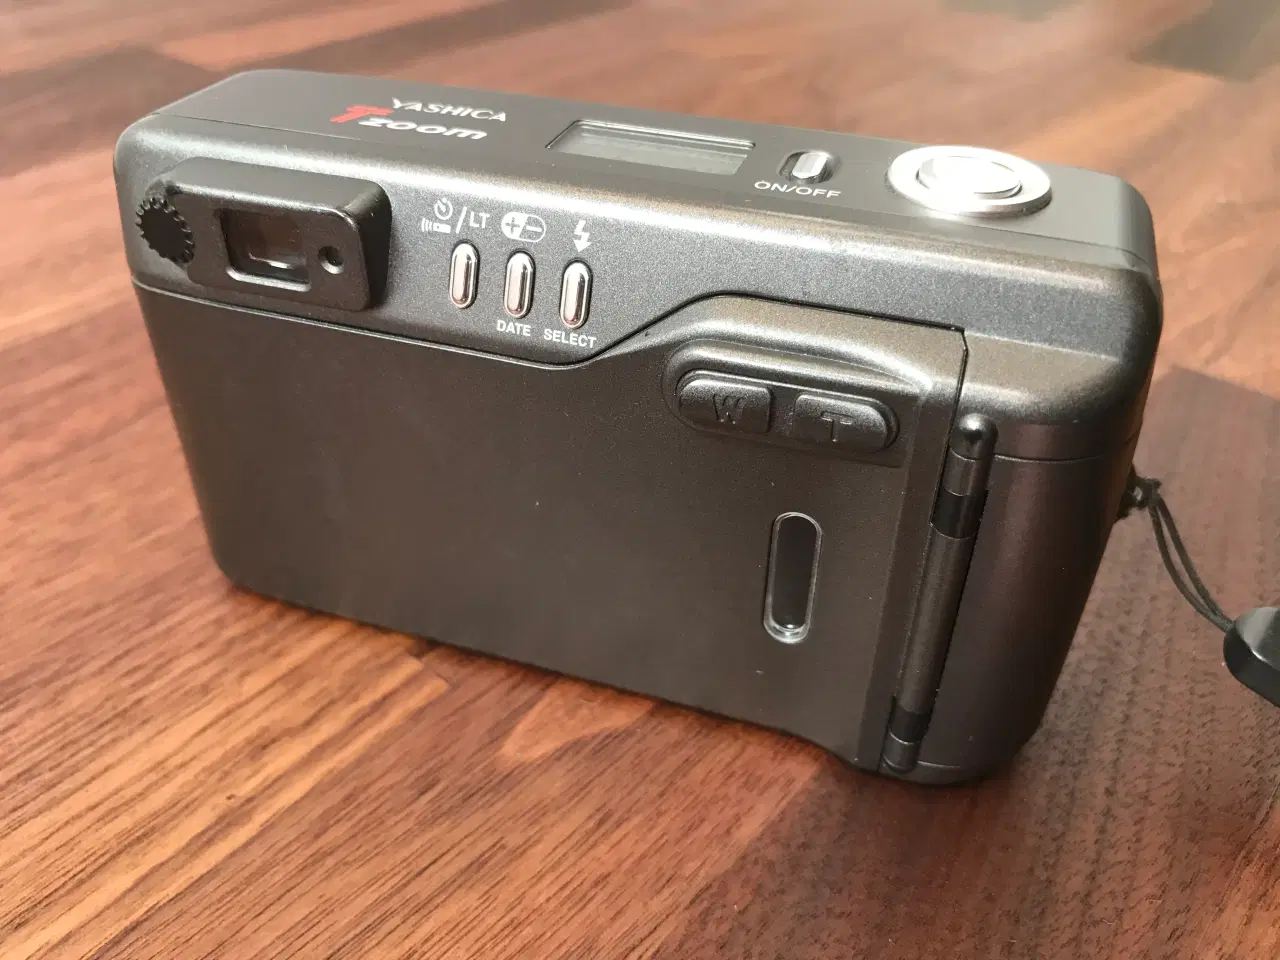 Billede 3 - Yashica kompakt kamera